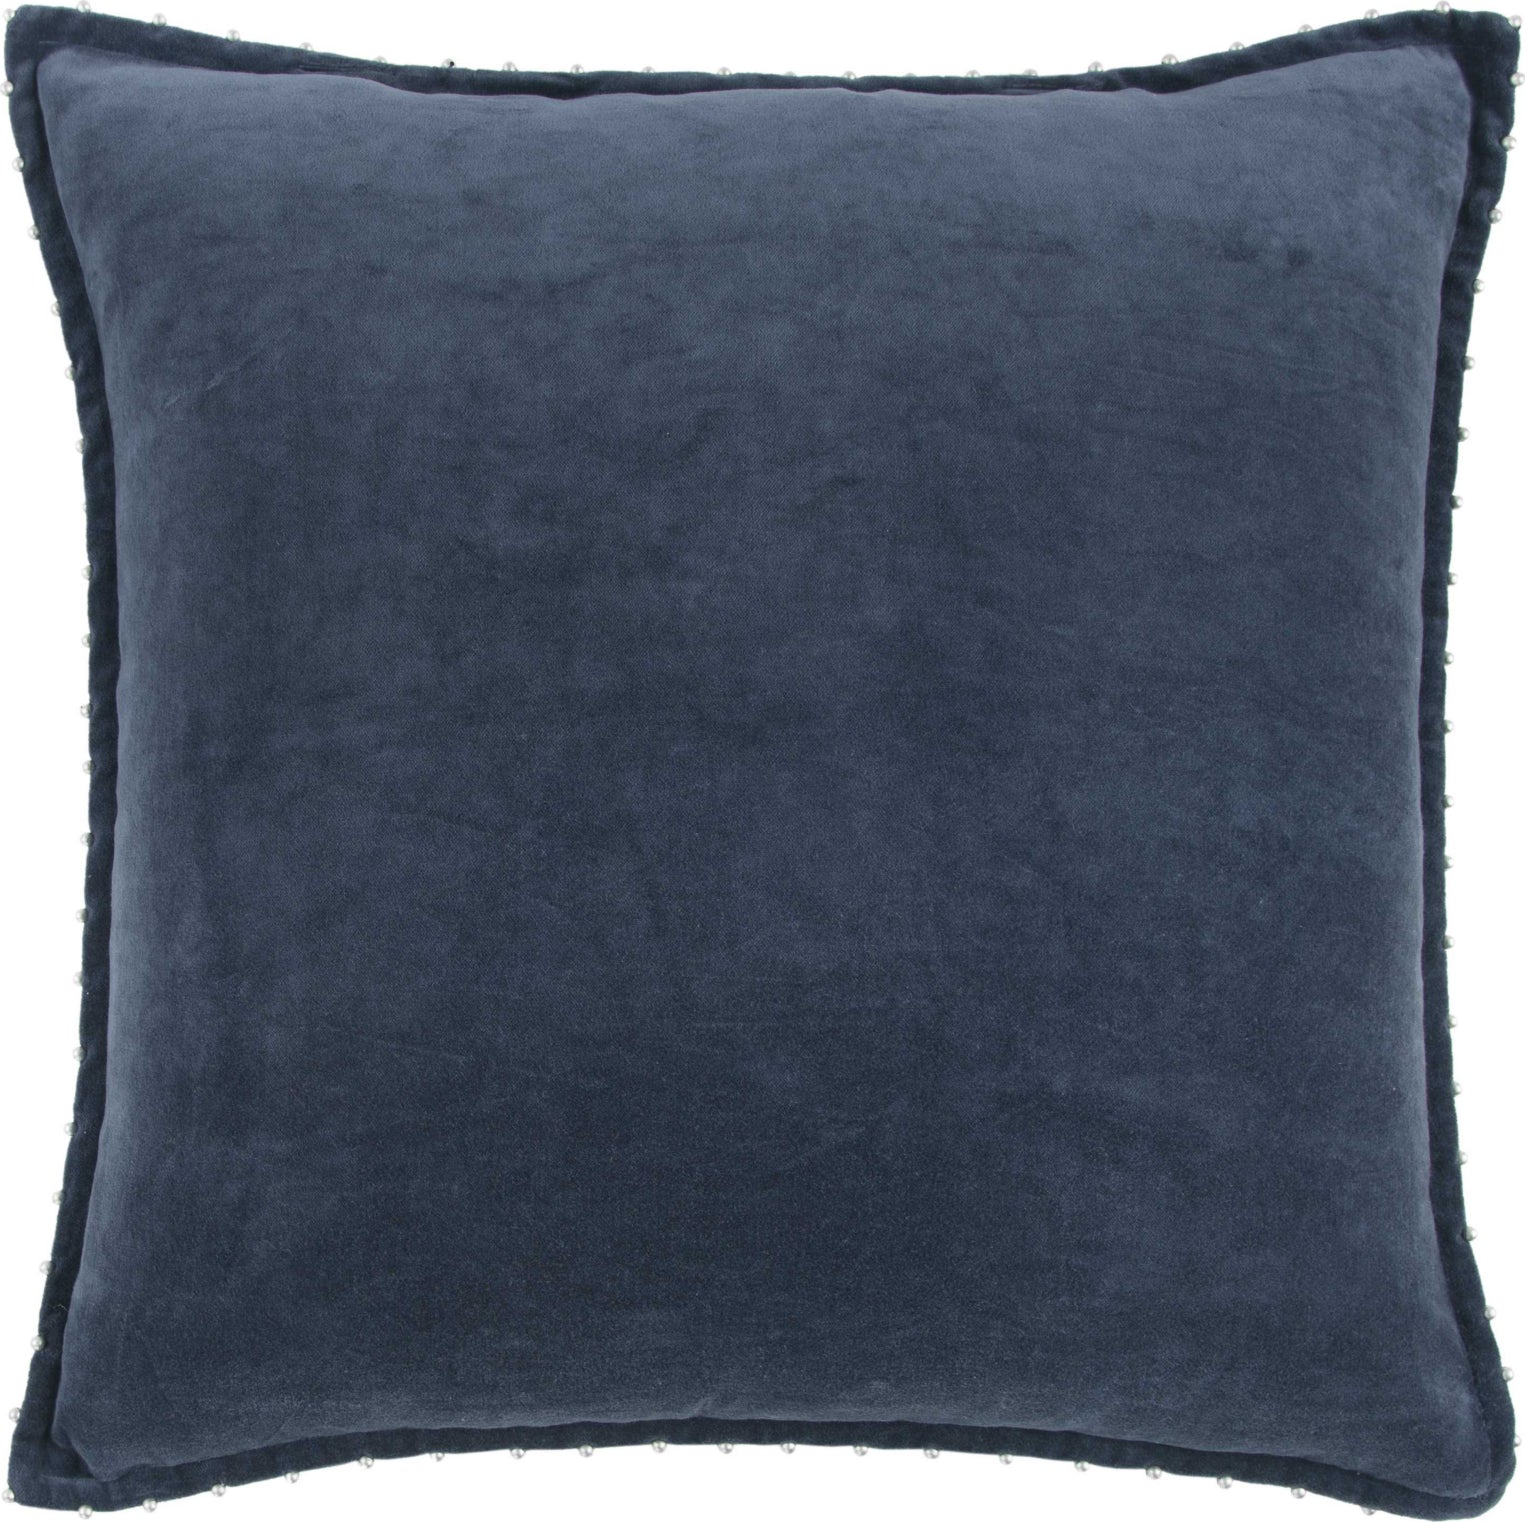 Rizzy Pillows T13194 Indigo